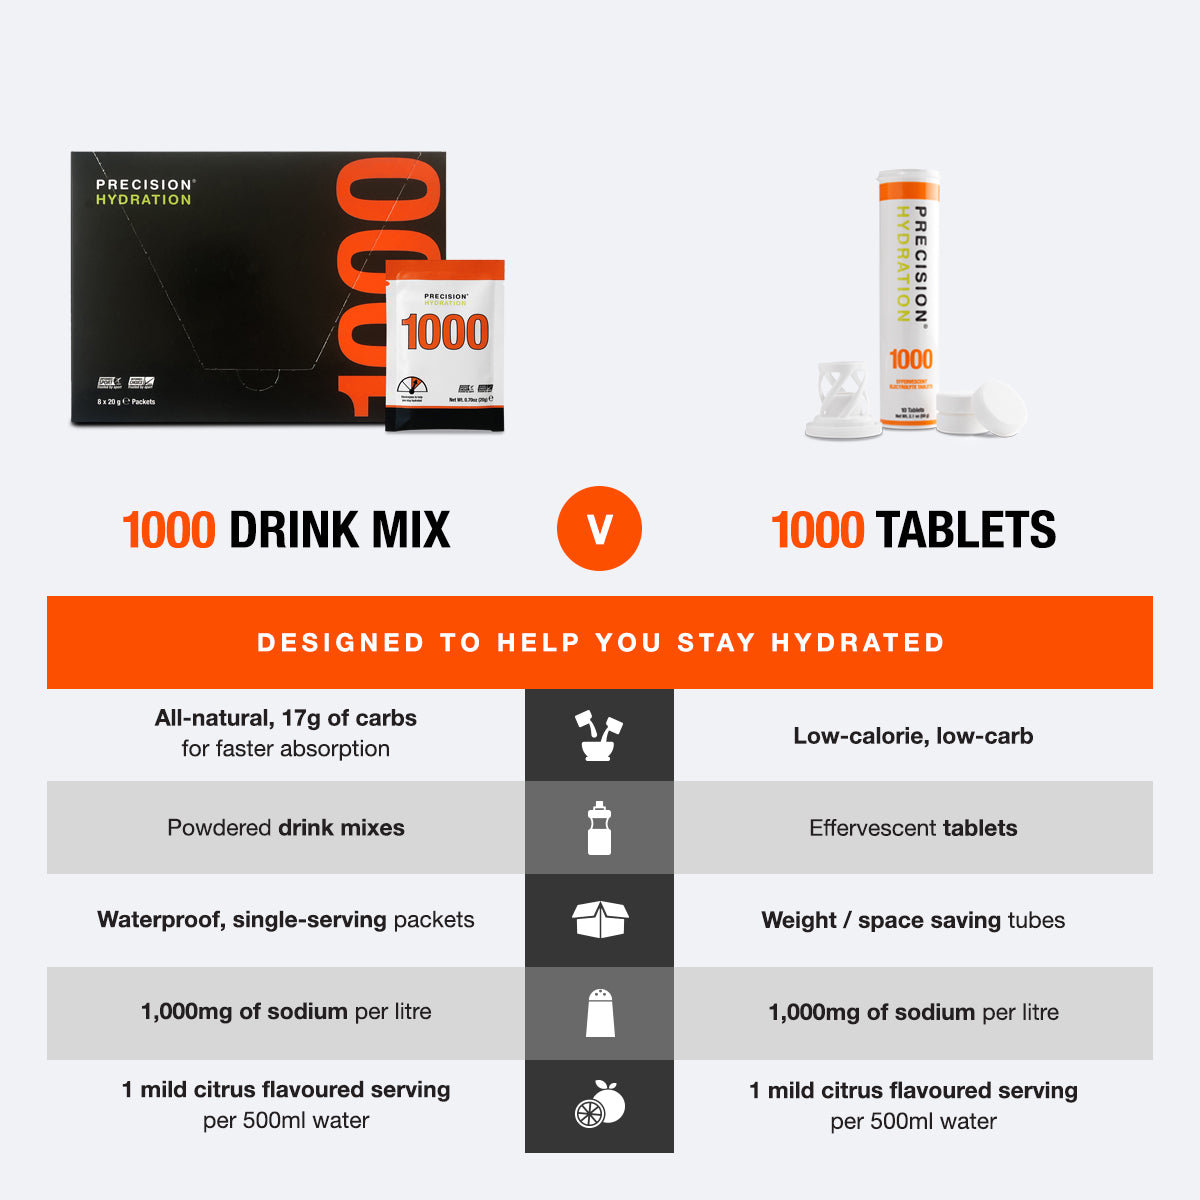 PH 1000 low-calorie tablets